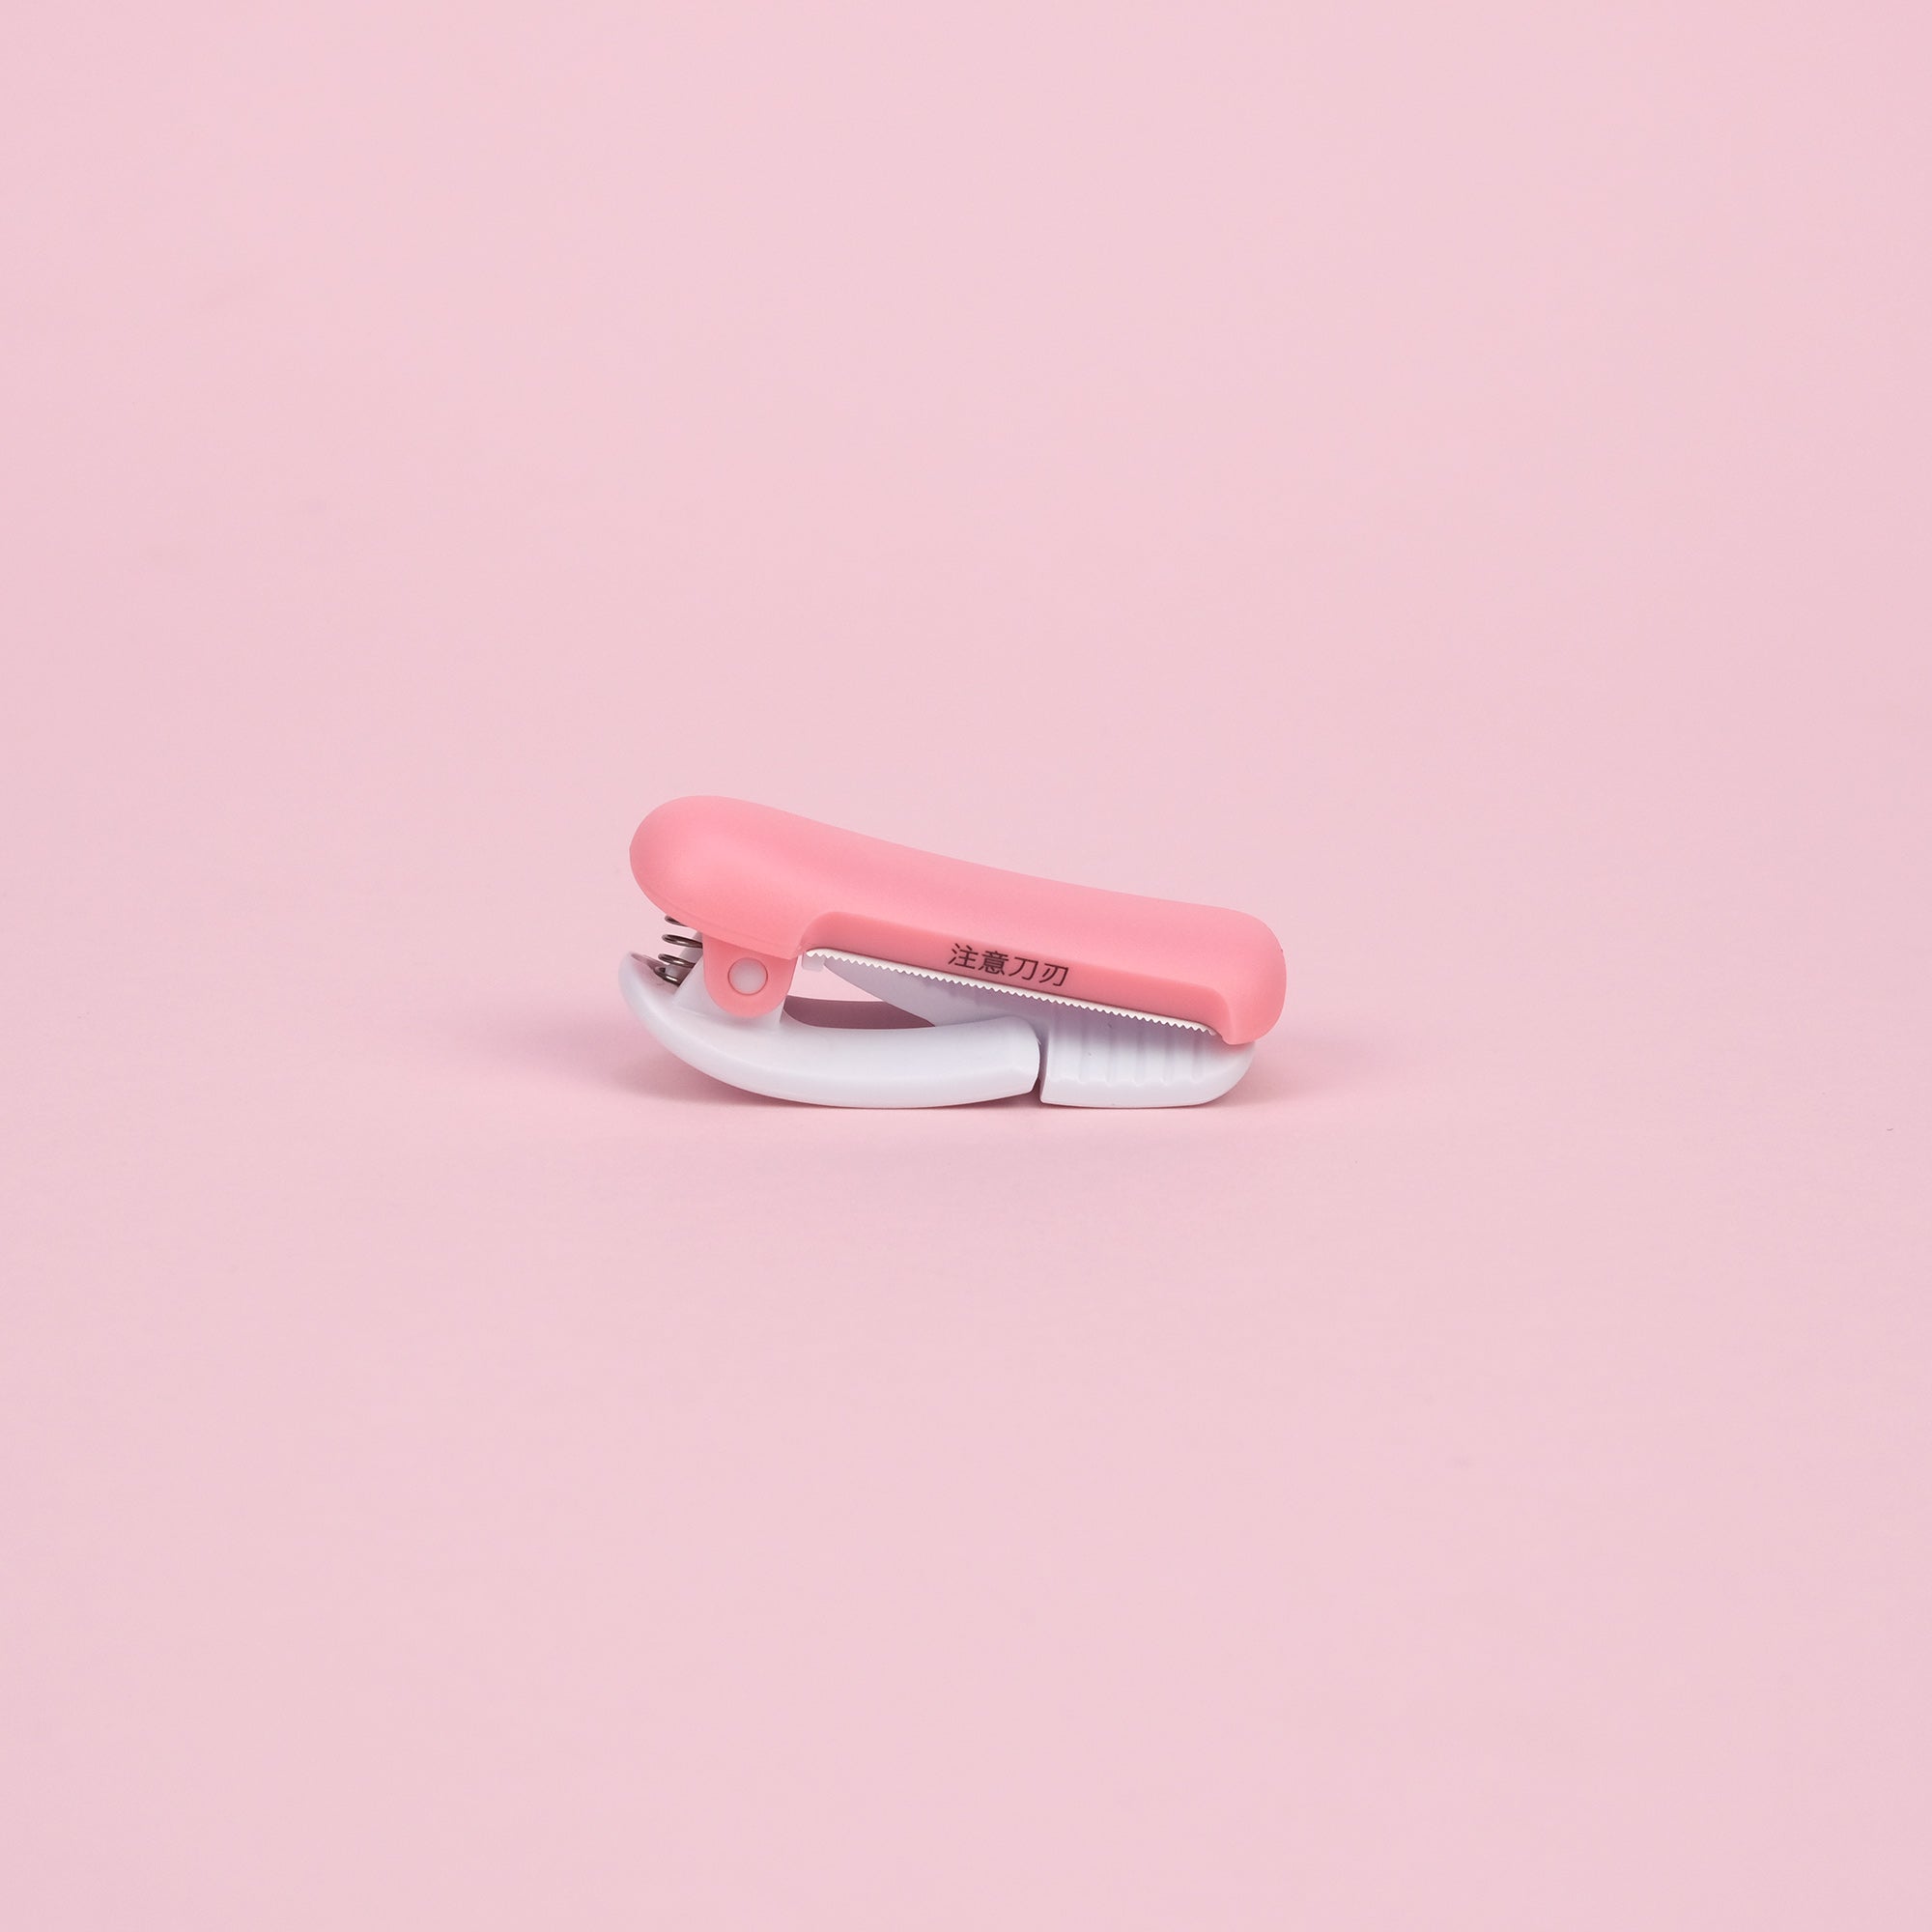 Kokuyo Karu Cut Washi Tape Cutter - Pink